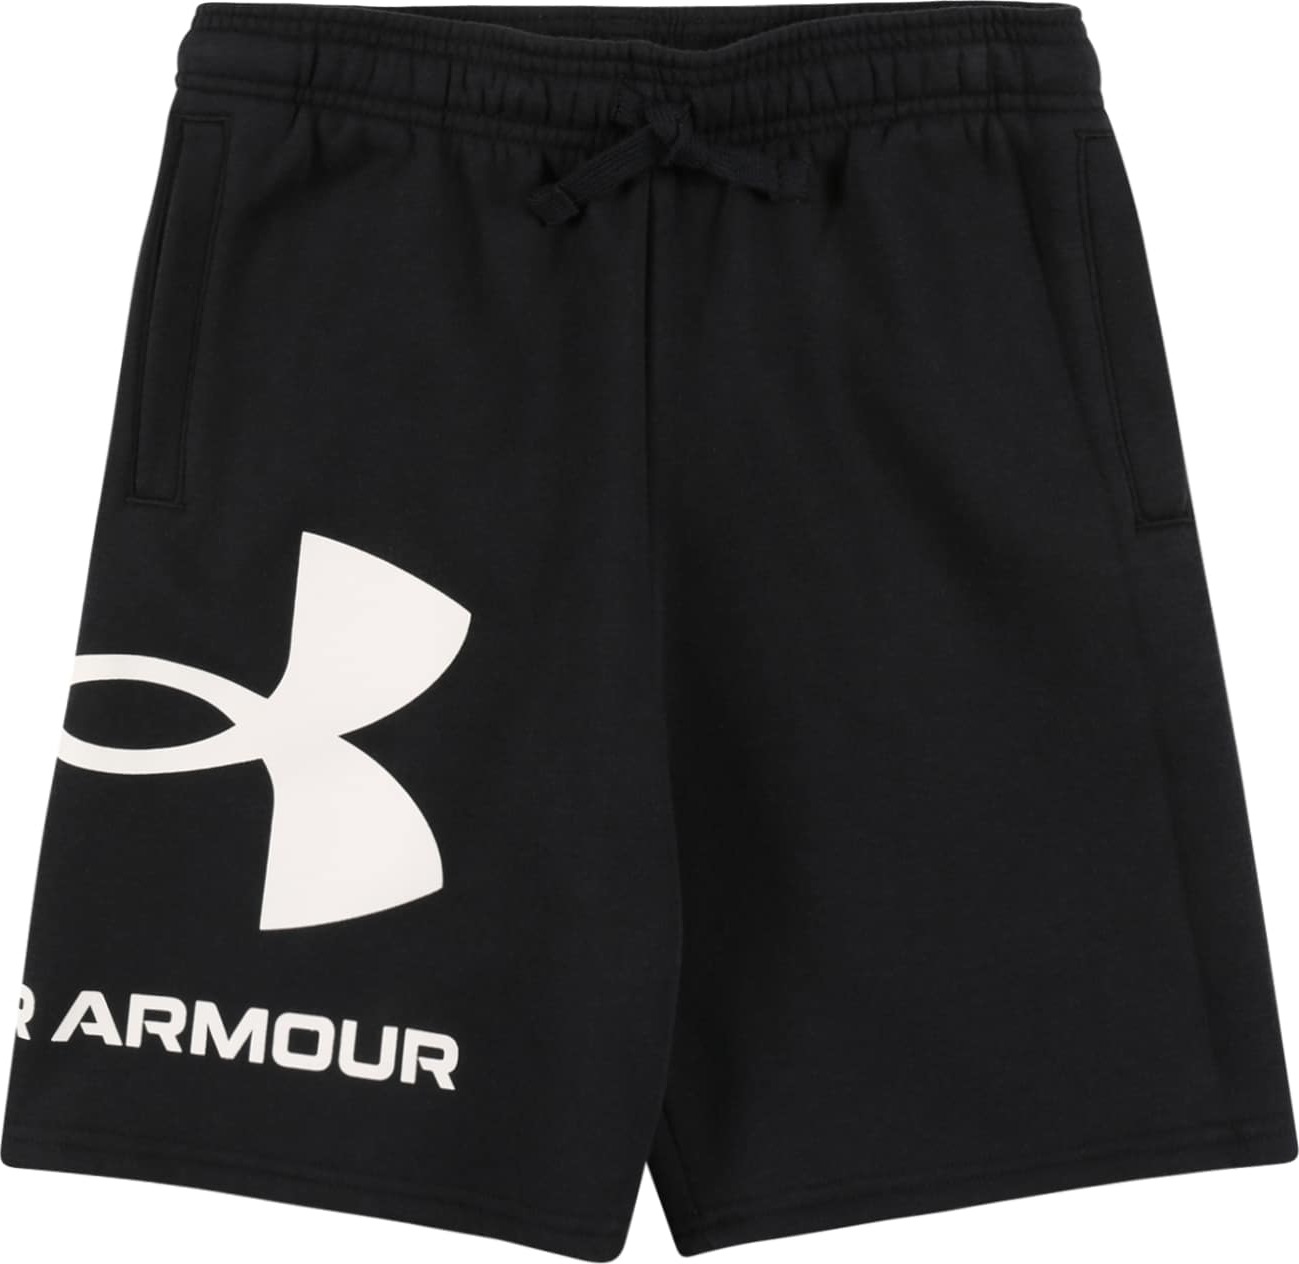 UNDER ARMOUR Sportovní kalhoty černá / bílá